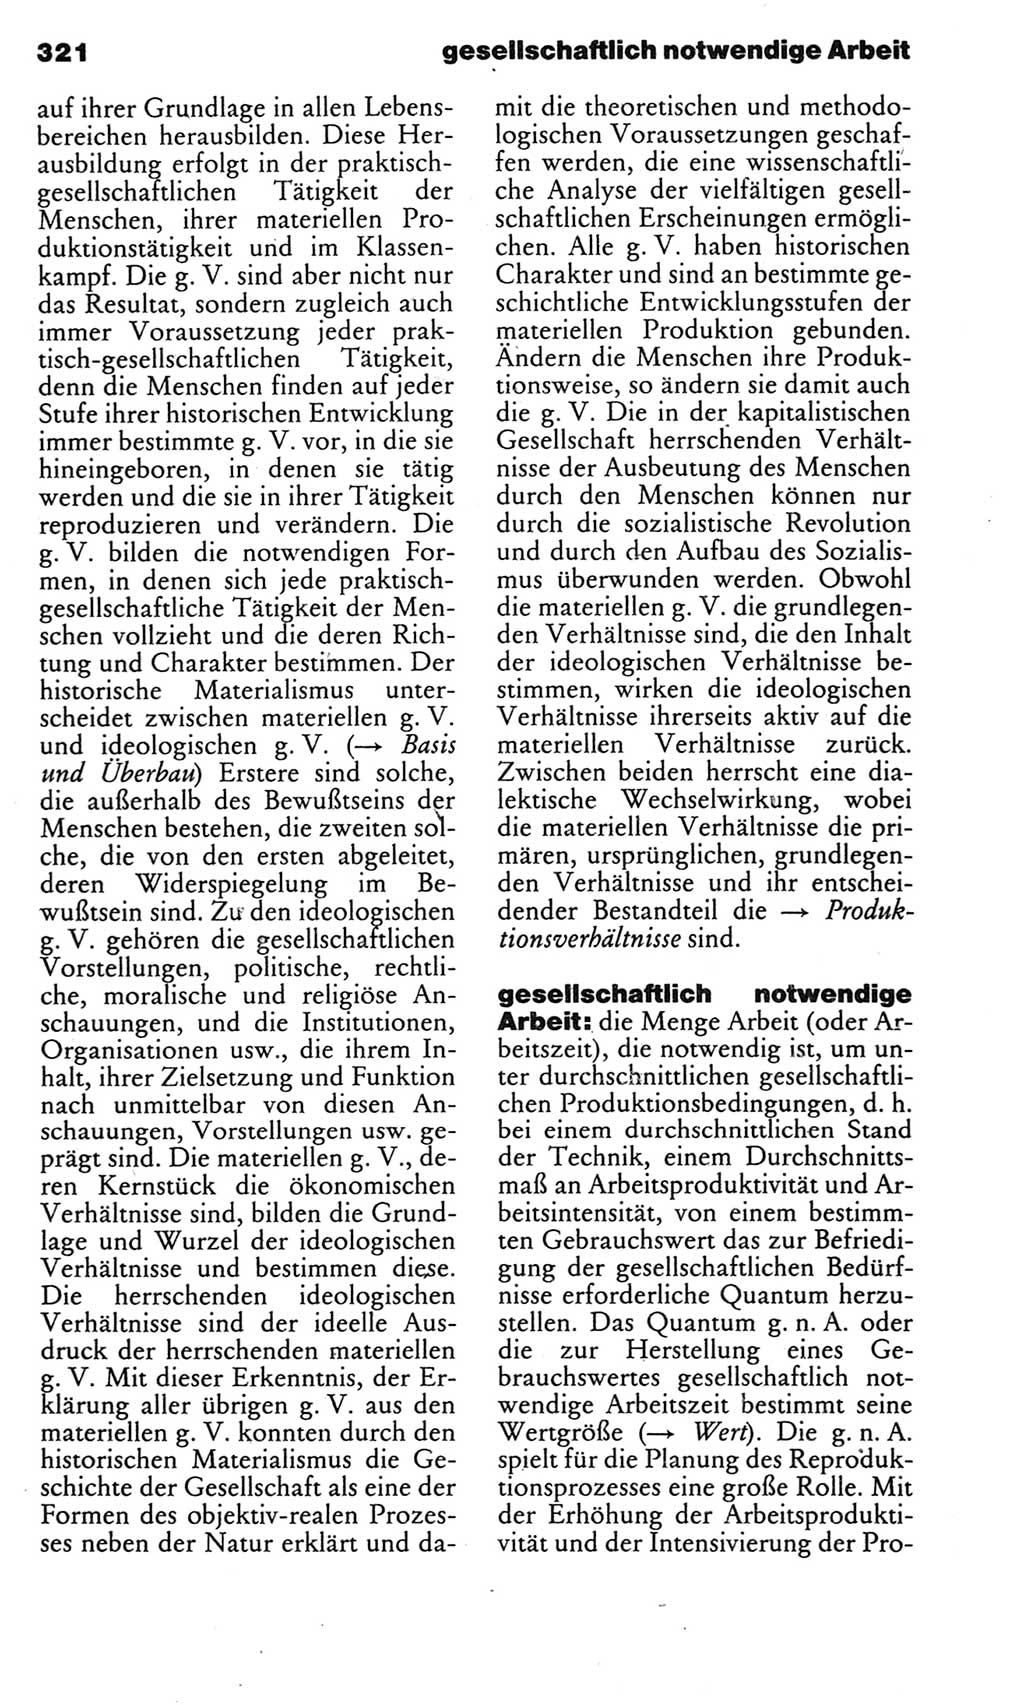 Kleines politisches Wörterbuch [Deutsche Demokratische Republik (DDR)] 1983, Seite 321 (Kl. pol. Wb. DDR 1983, S. 321)